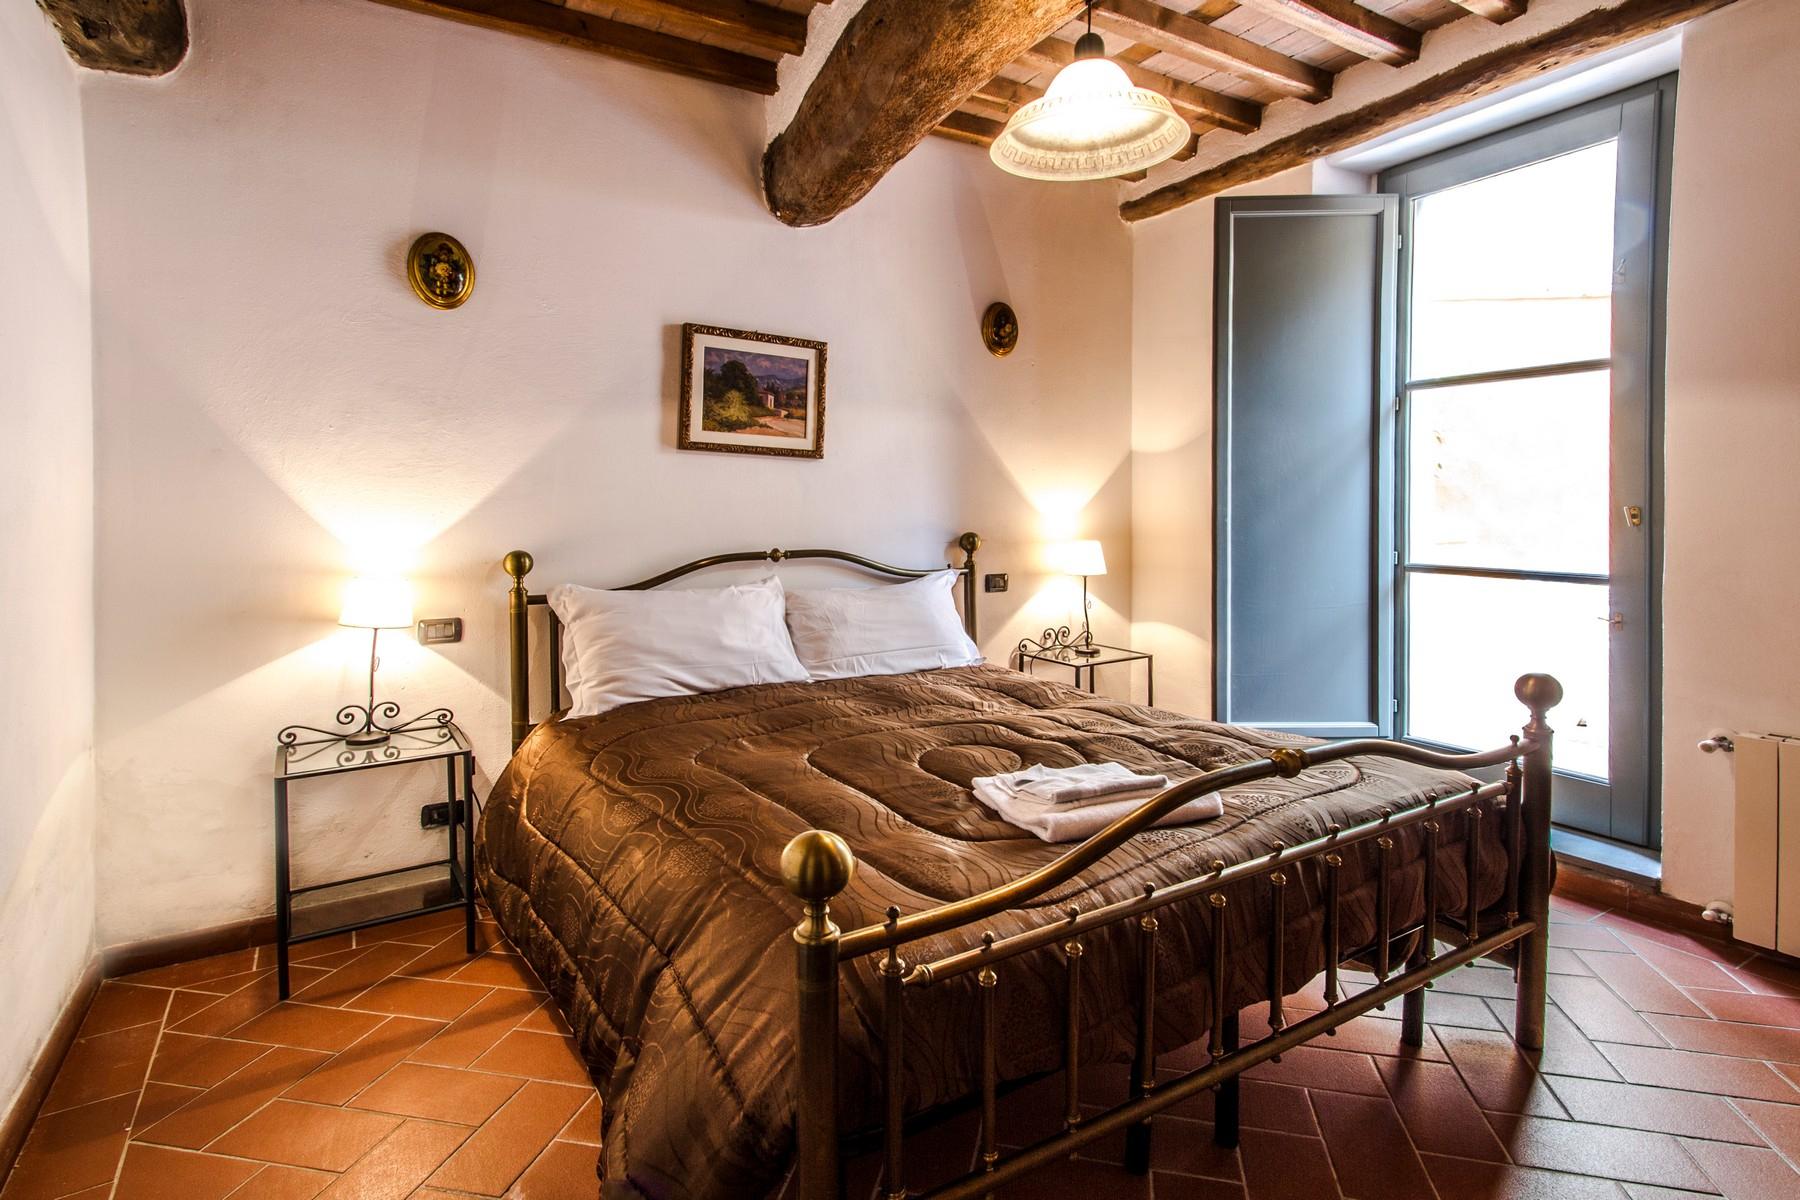 Appartamento di pregio in resort esclusivo con villa storica sulle colline di Lucca - 6